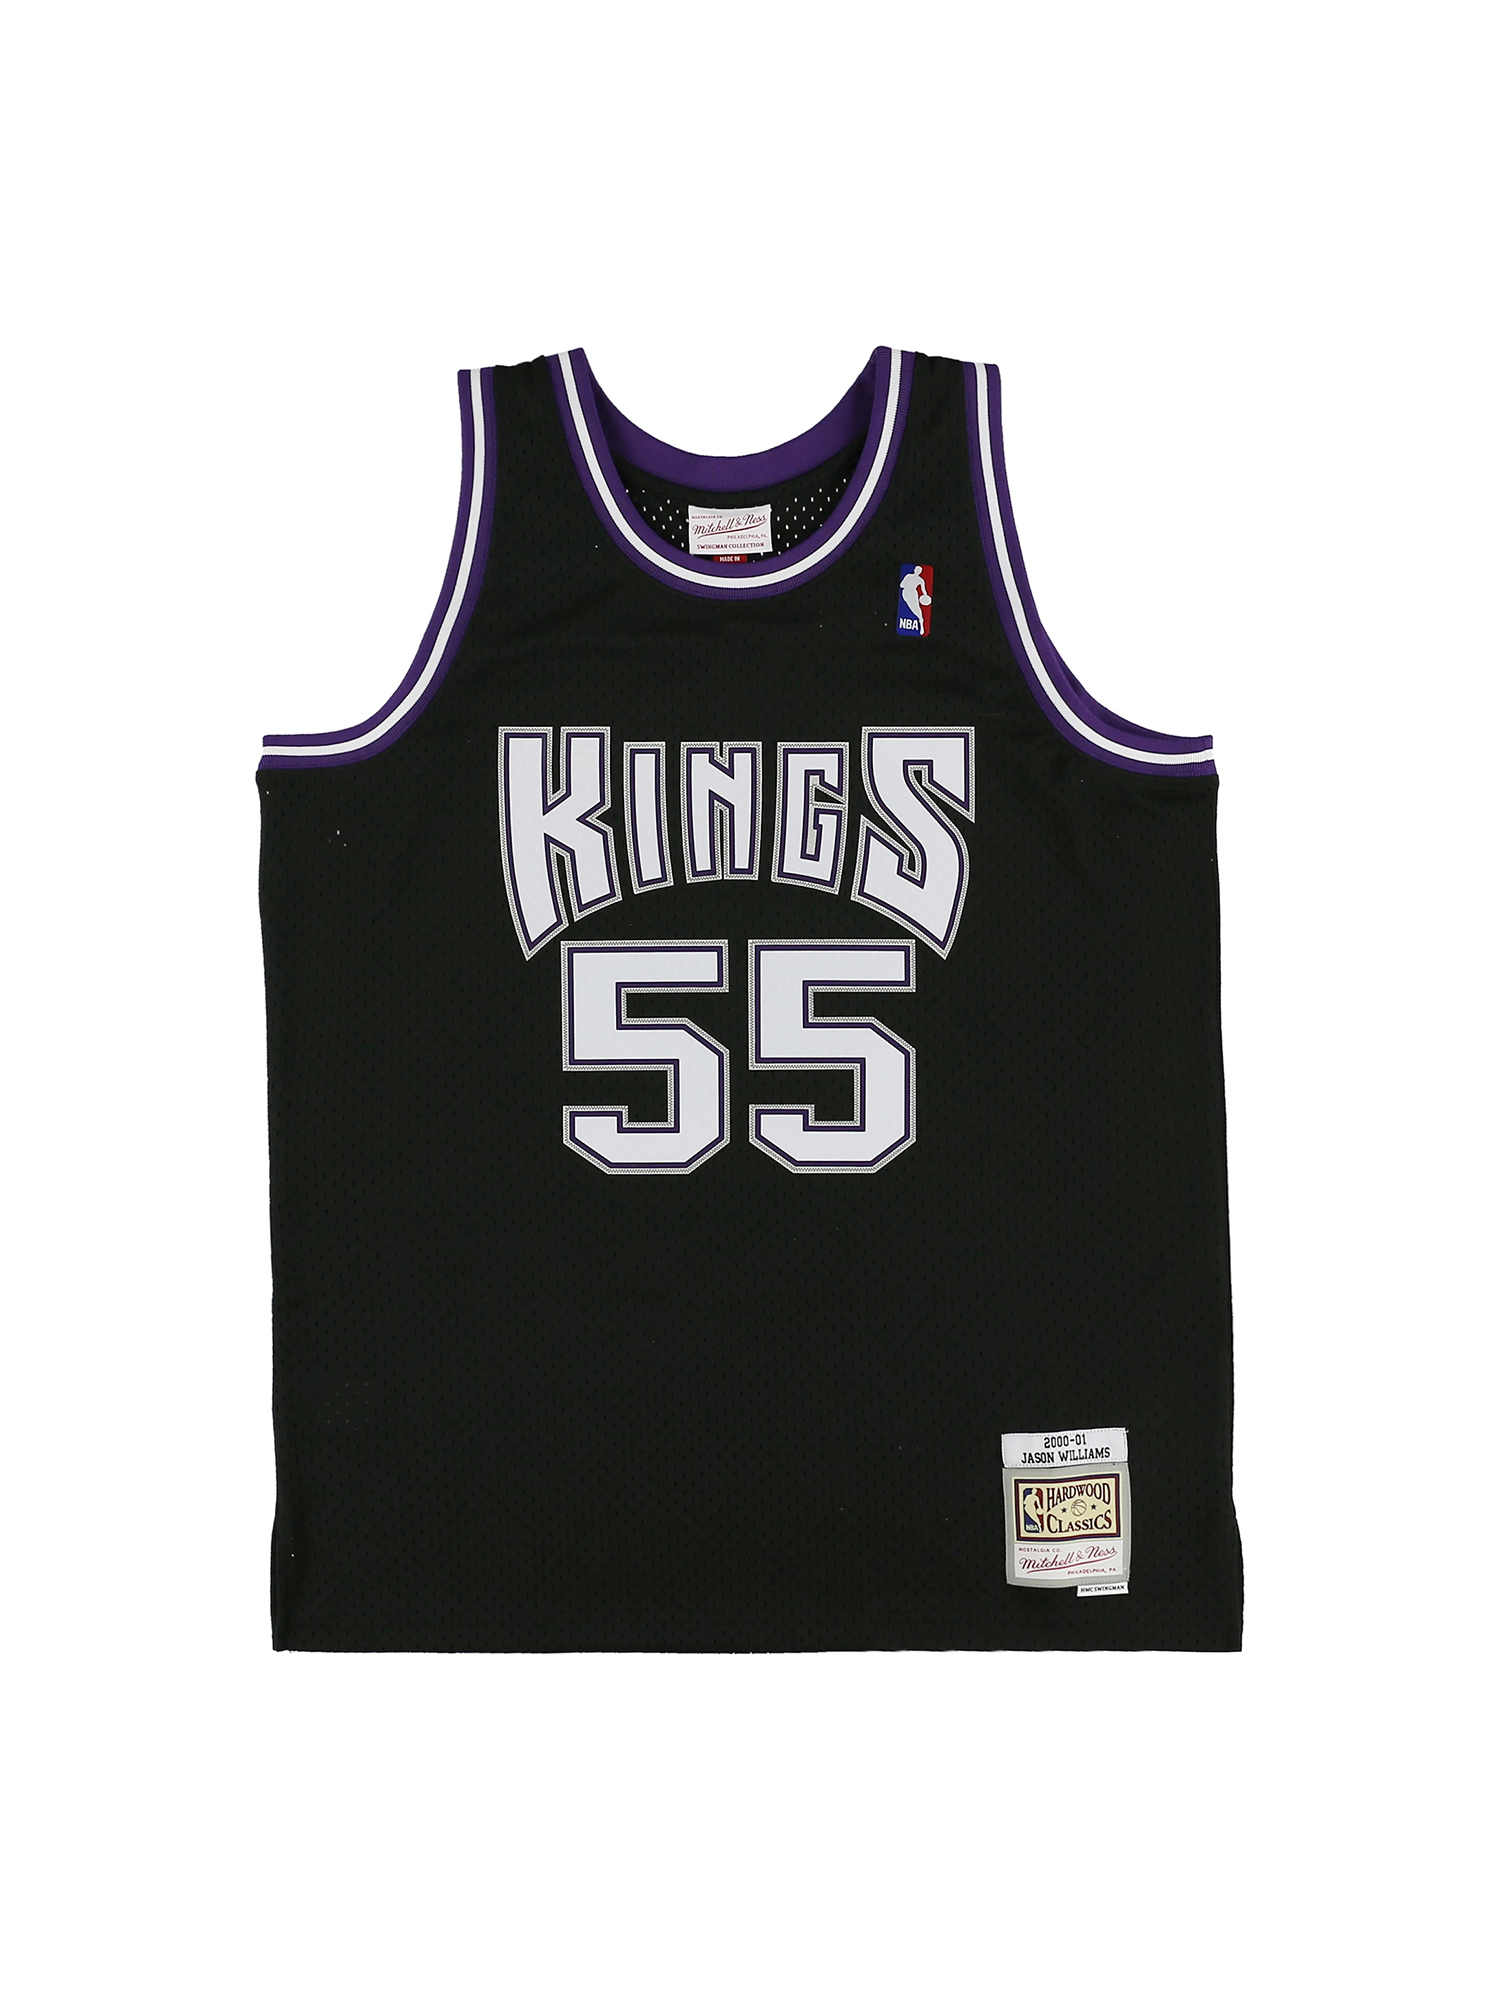 ジェイソン・ウィリアムス キングス ロード スイングマンジャージ 2000-01 SACRAMENTO KINGS NBA SWINGMAN ROAD  JERSEY KINGS 0